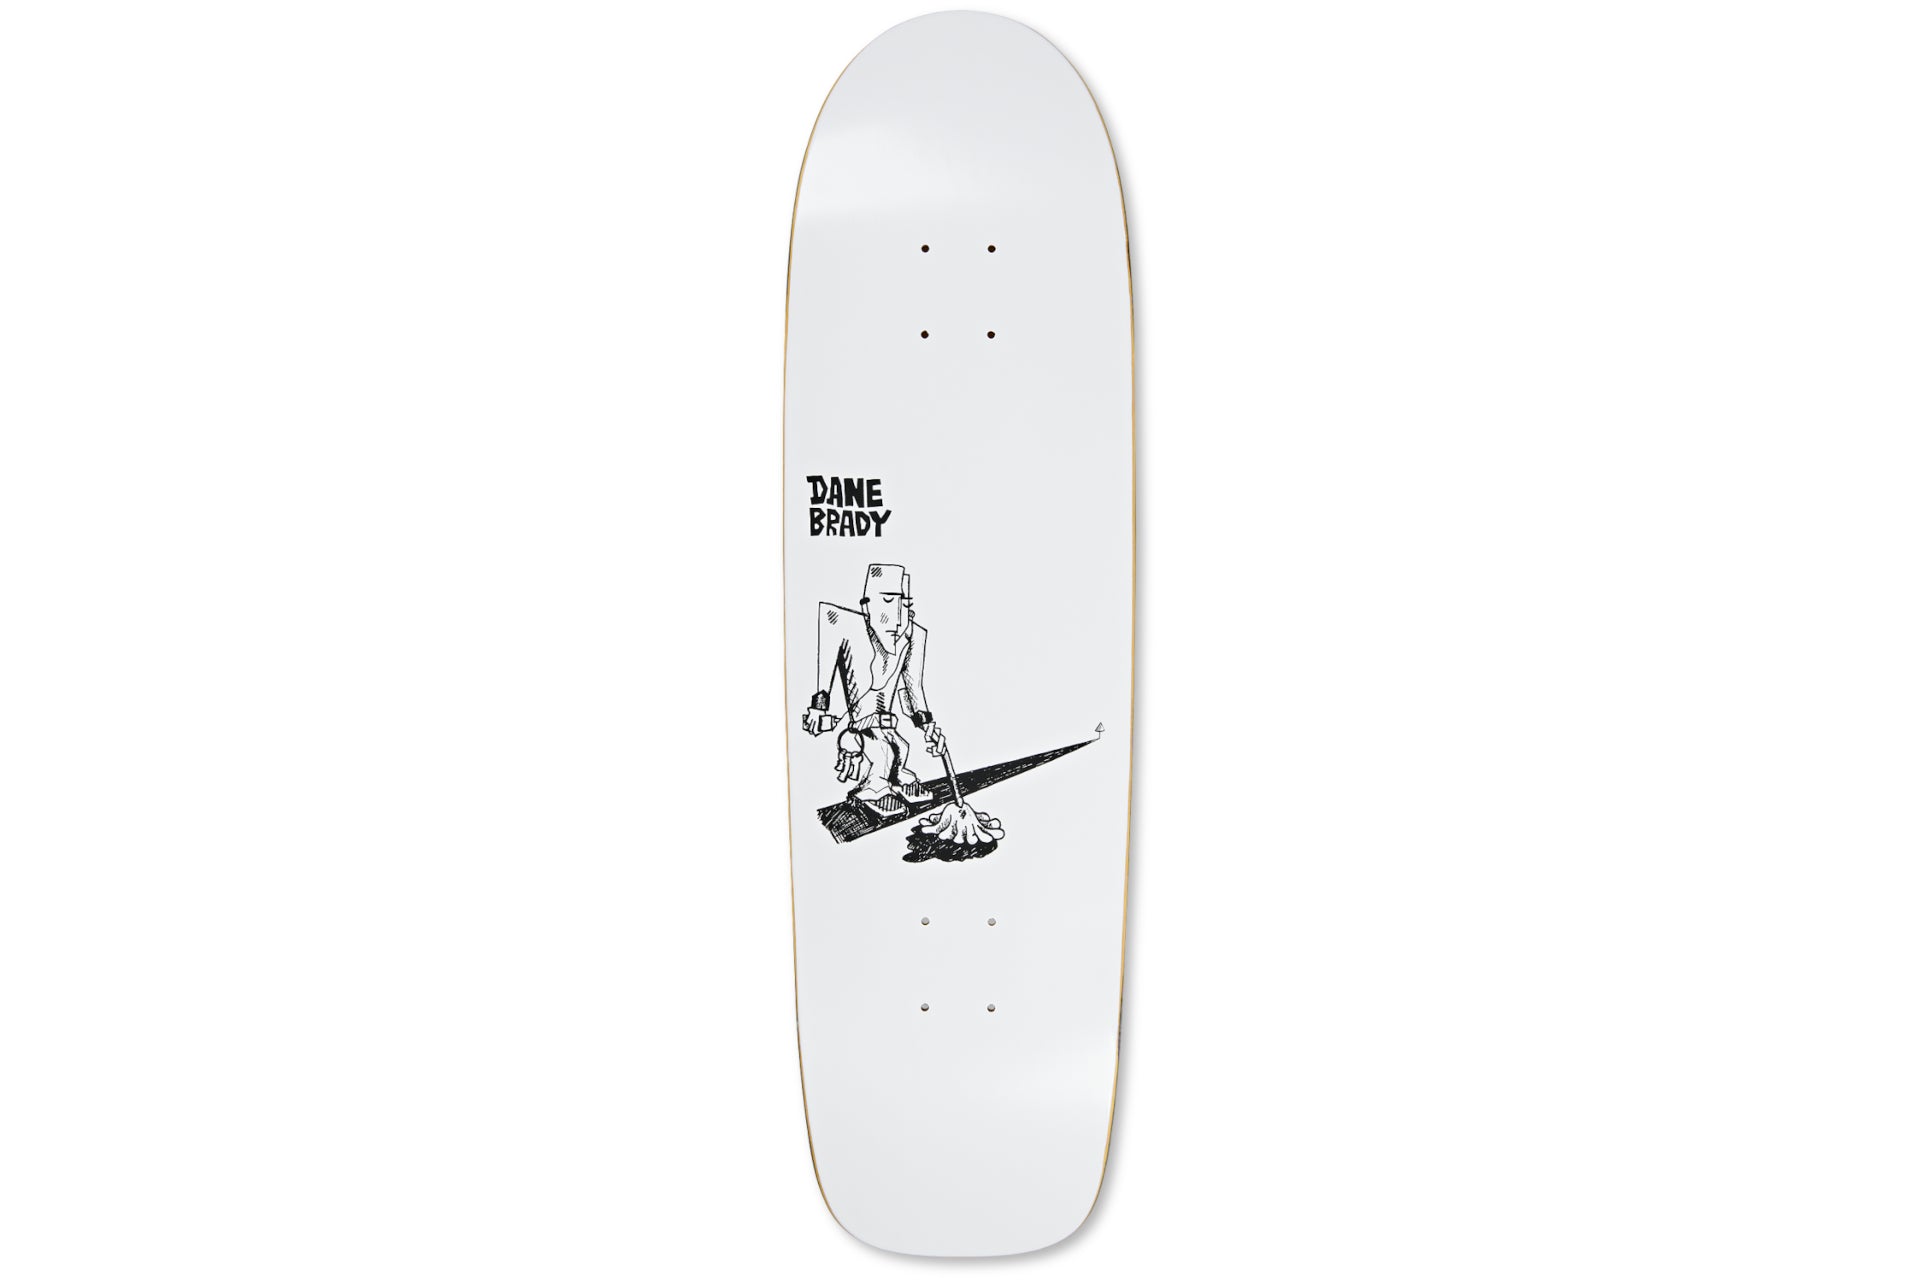 Dane Brady - Mopping - White - Surf Jr. 8.75"